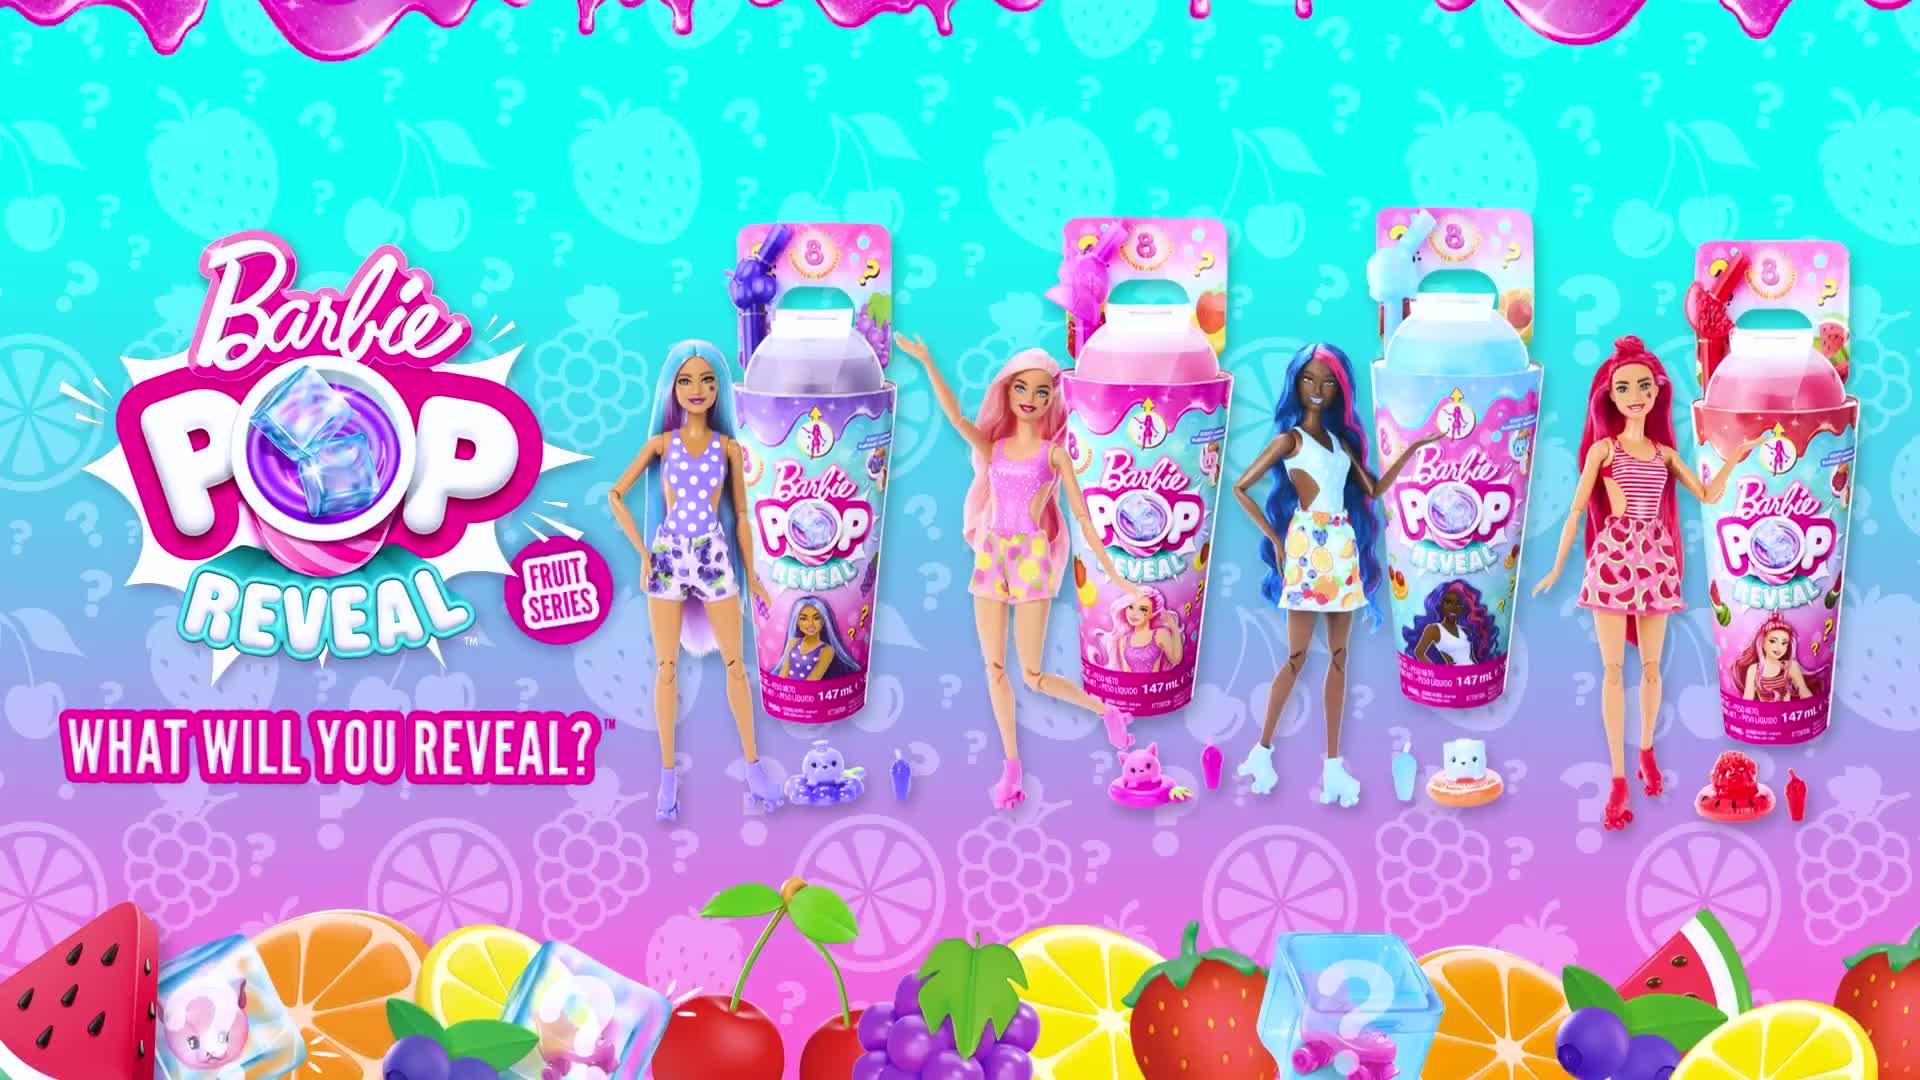 Barbie Pop! Reveal Juicy Fruits Series - Fruit Punch